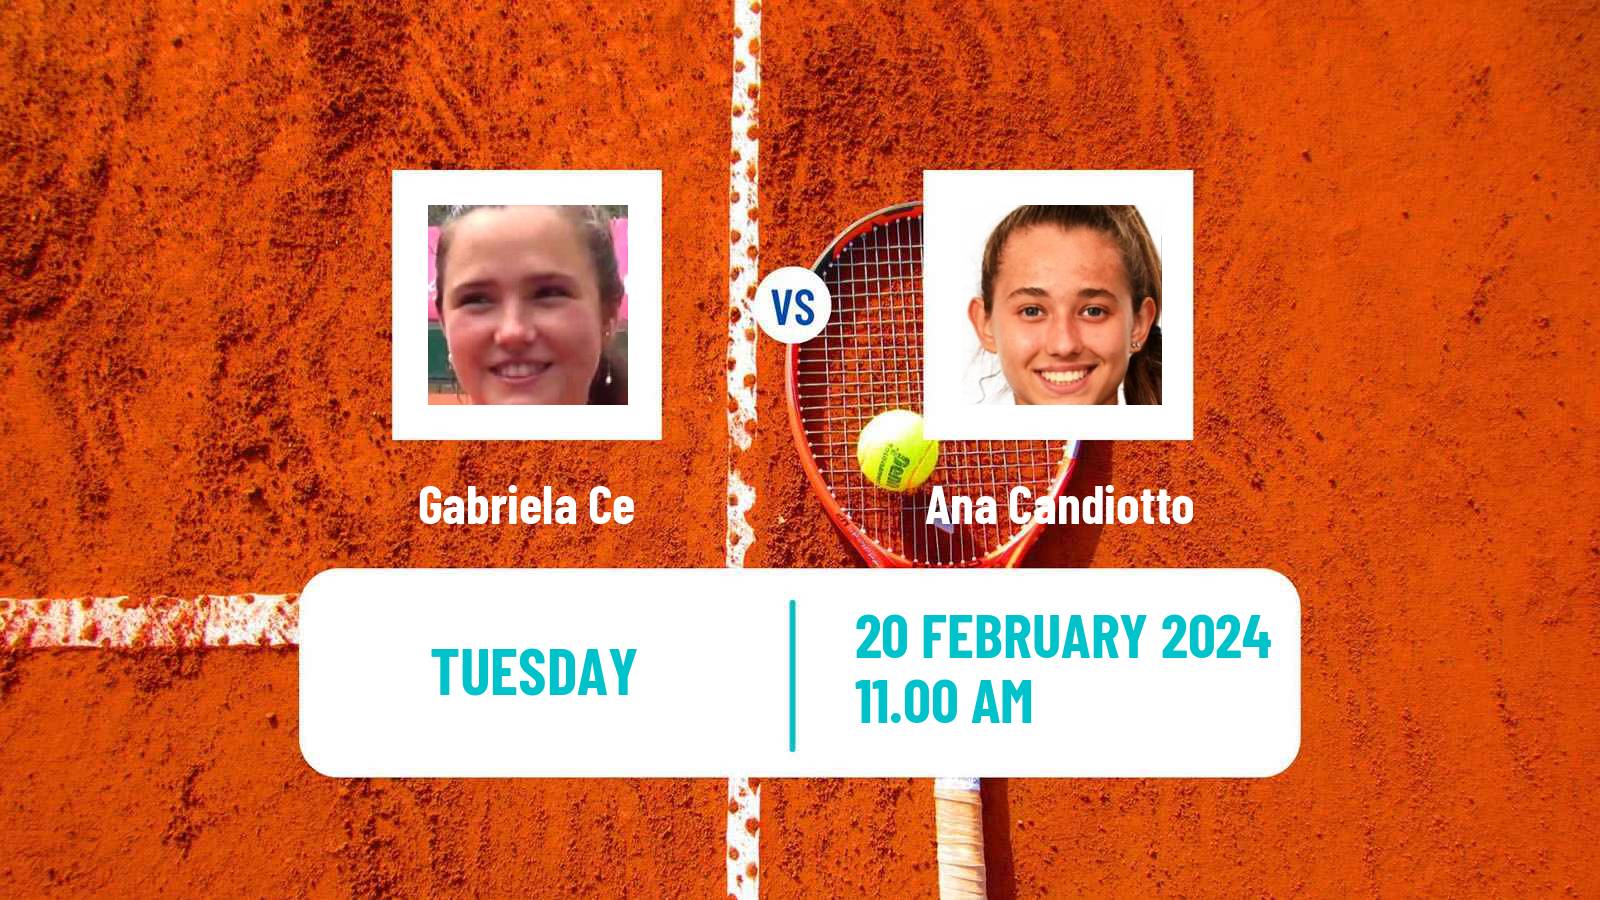 Tennis ITF W50 Mexico City Women Gabriela Ce - Ana Candiotto